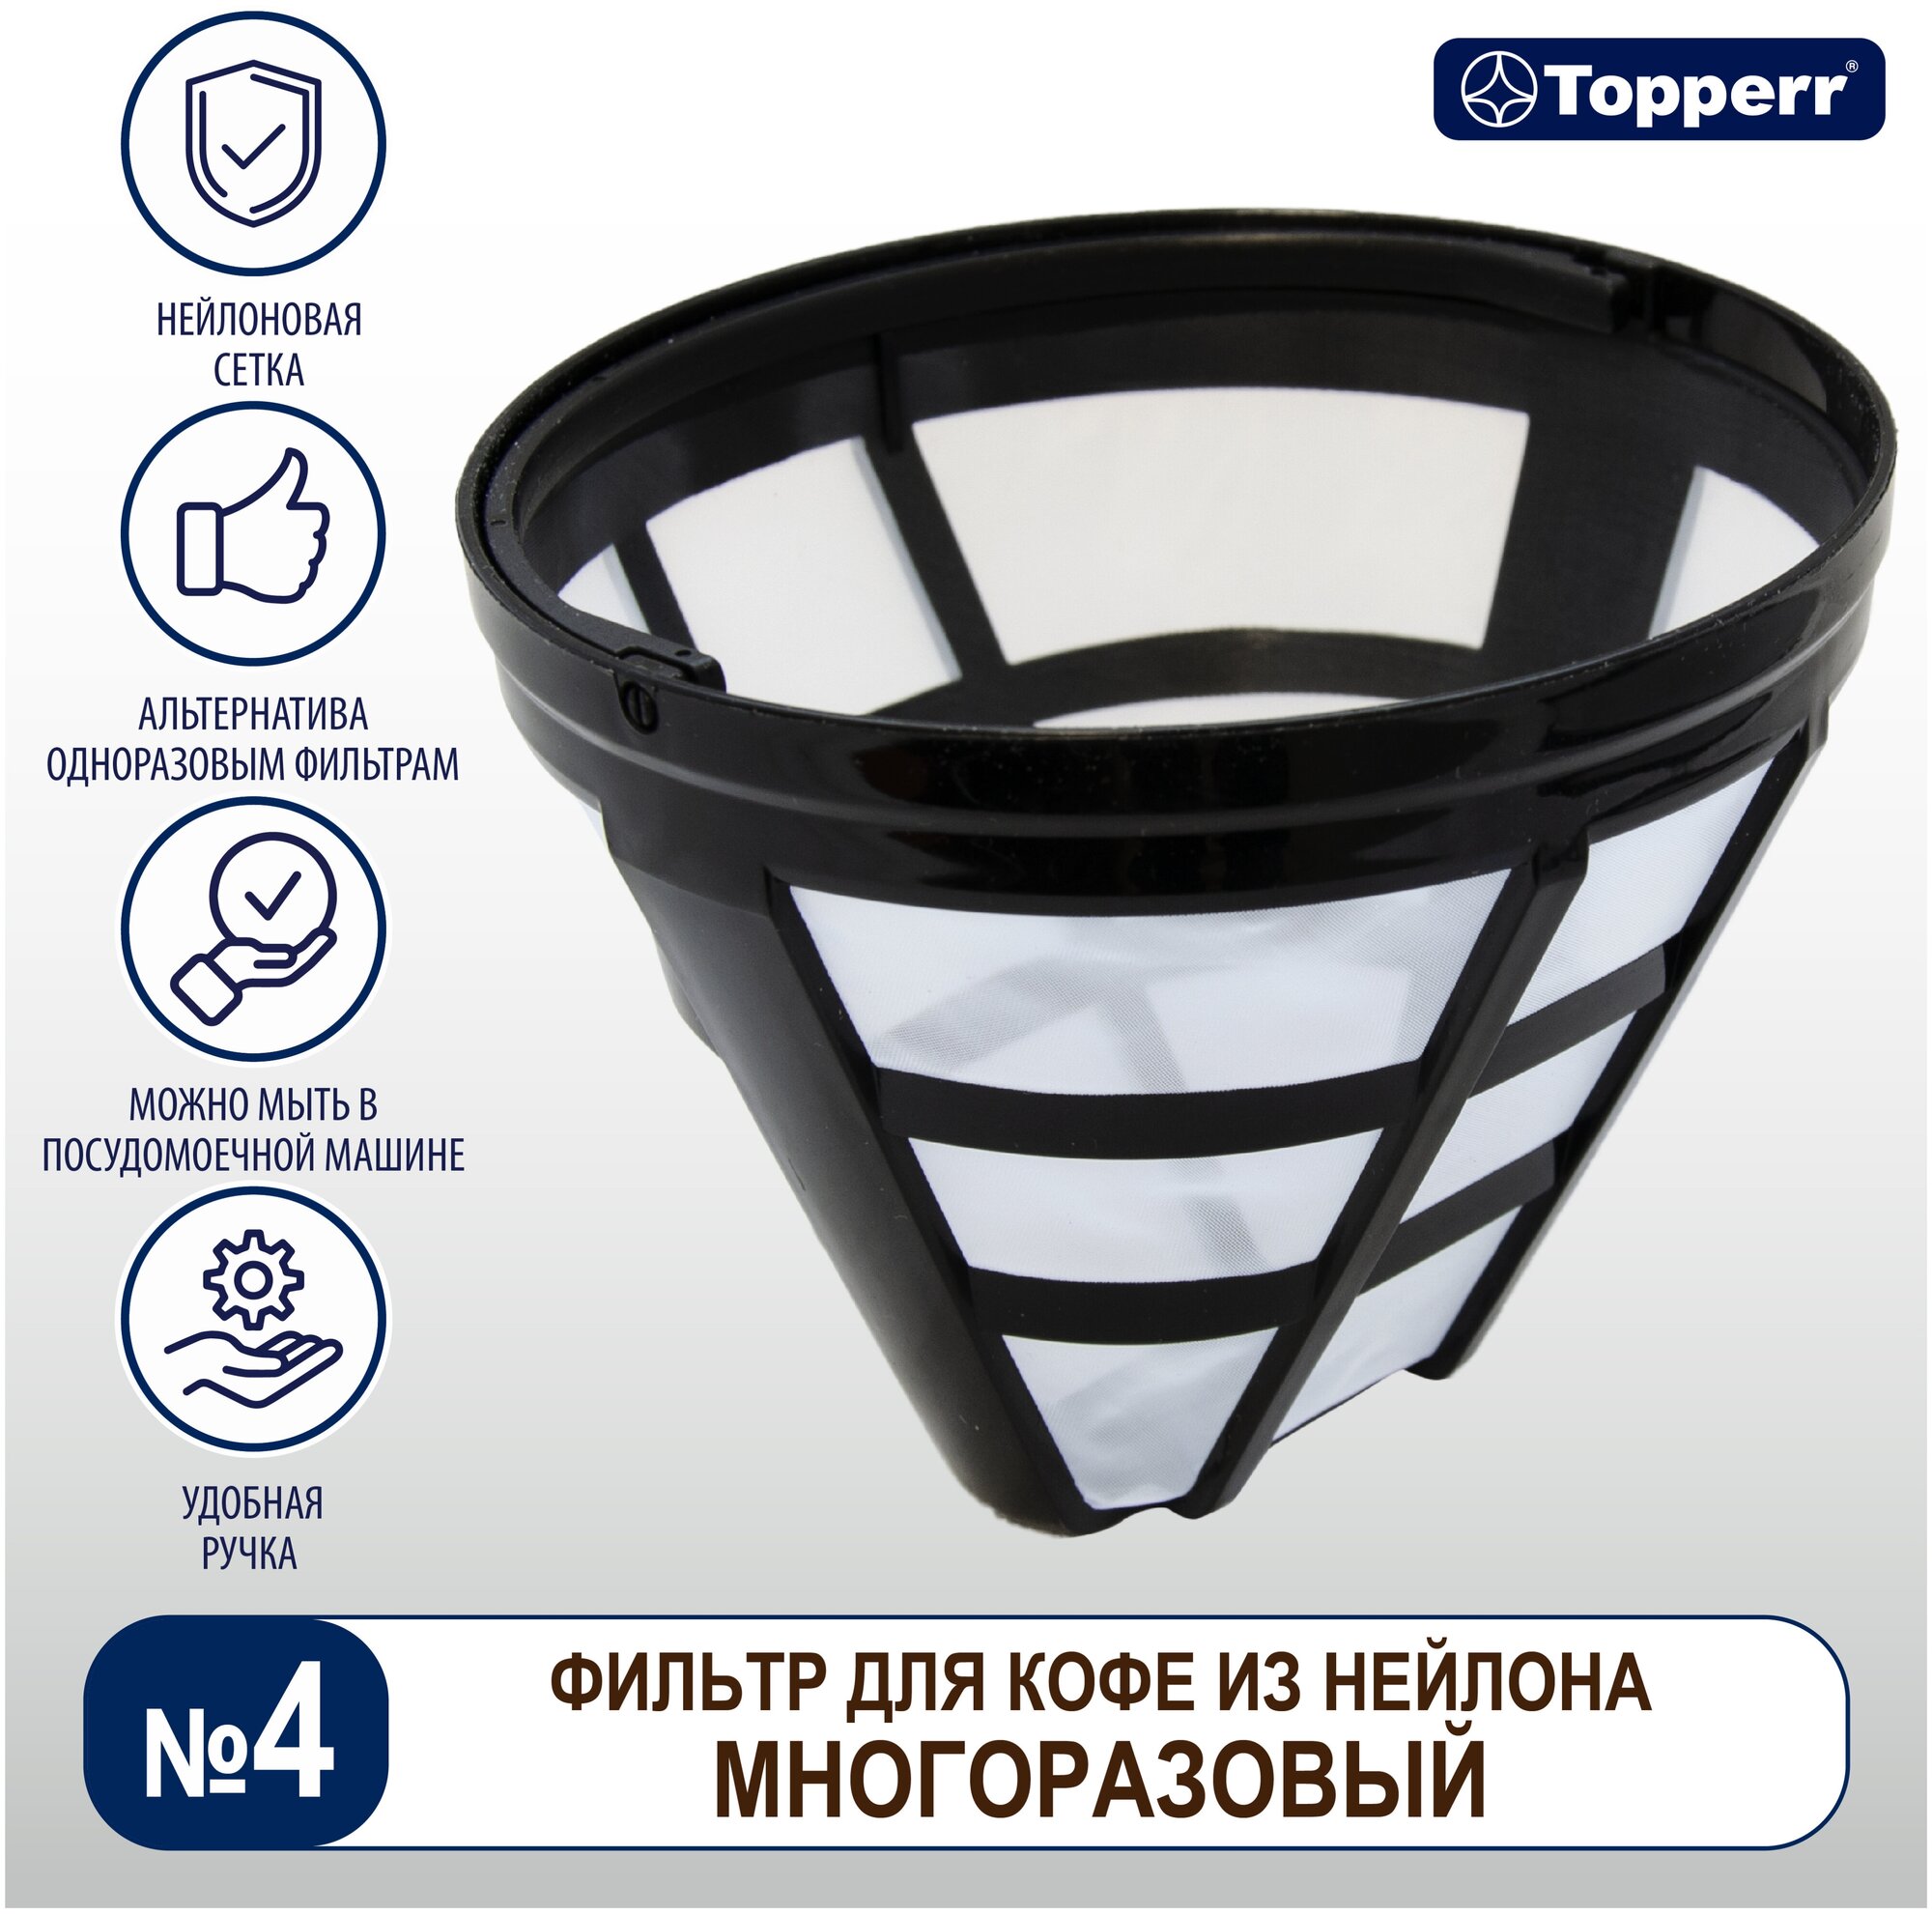 Фильтр для кофеварки многоразовый Topperr